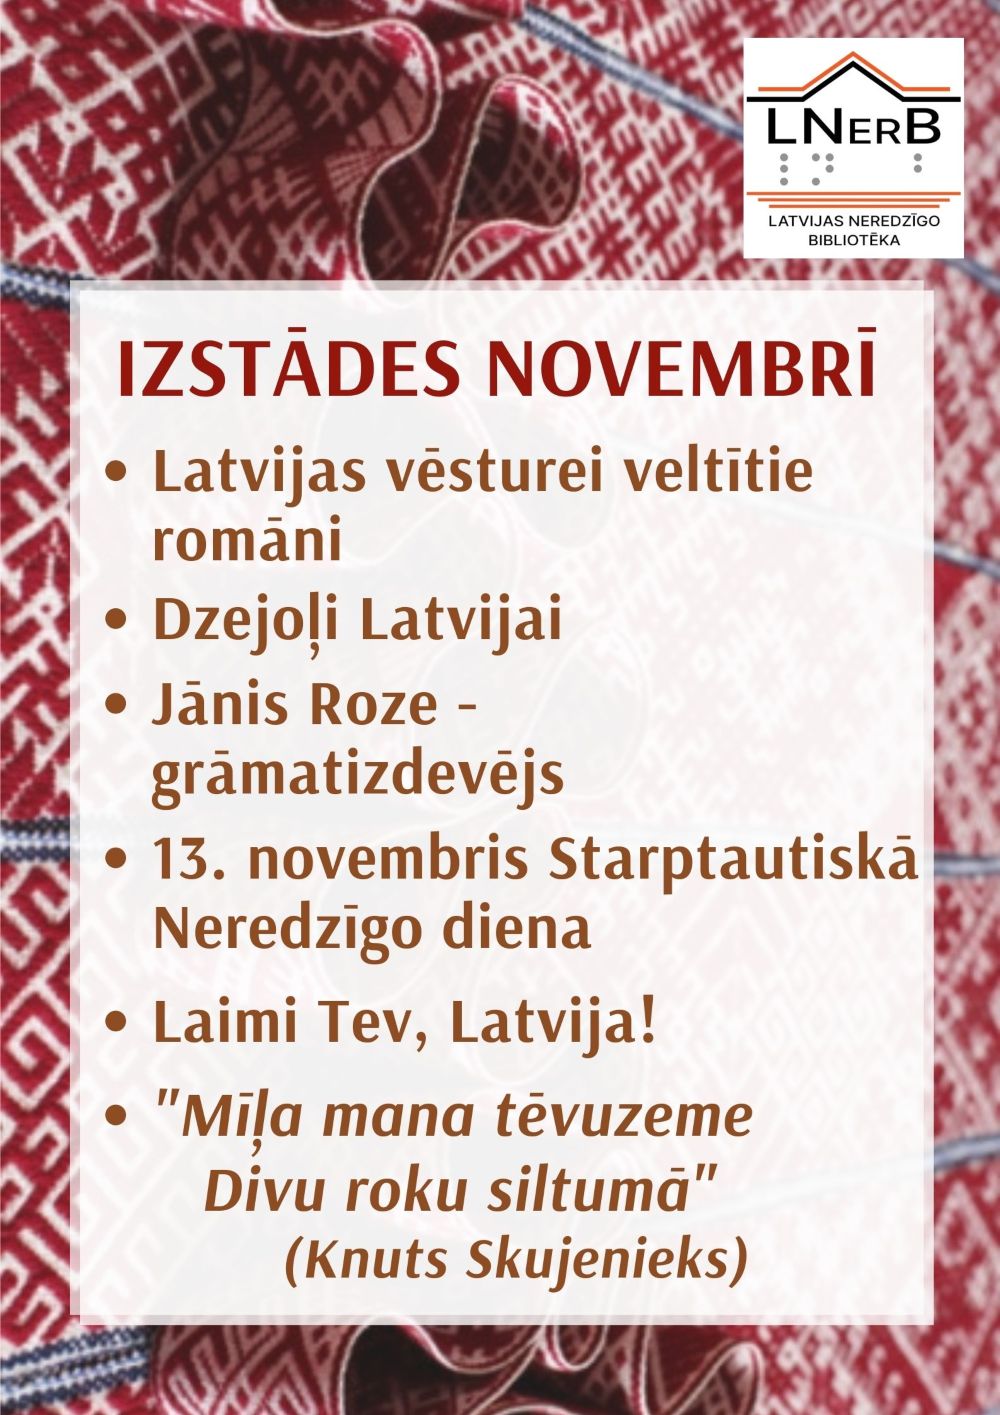 Plakāts "Izstādes novembrī bibliotēkā Rīgā"